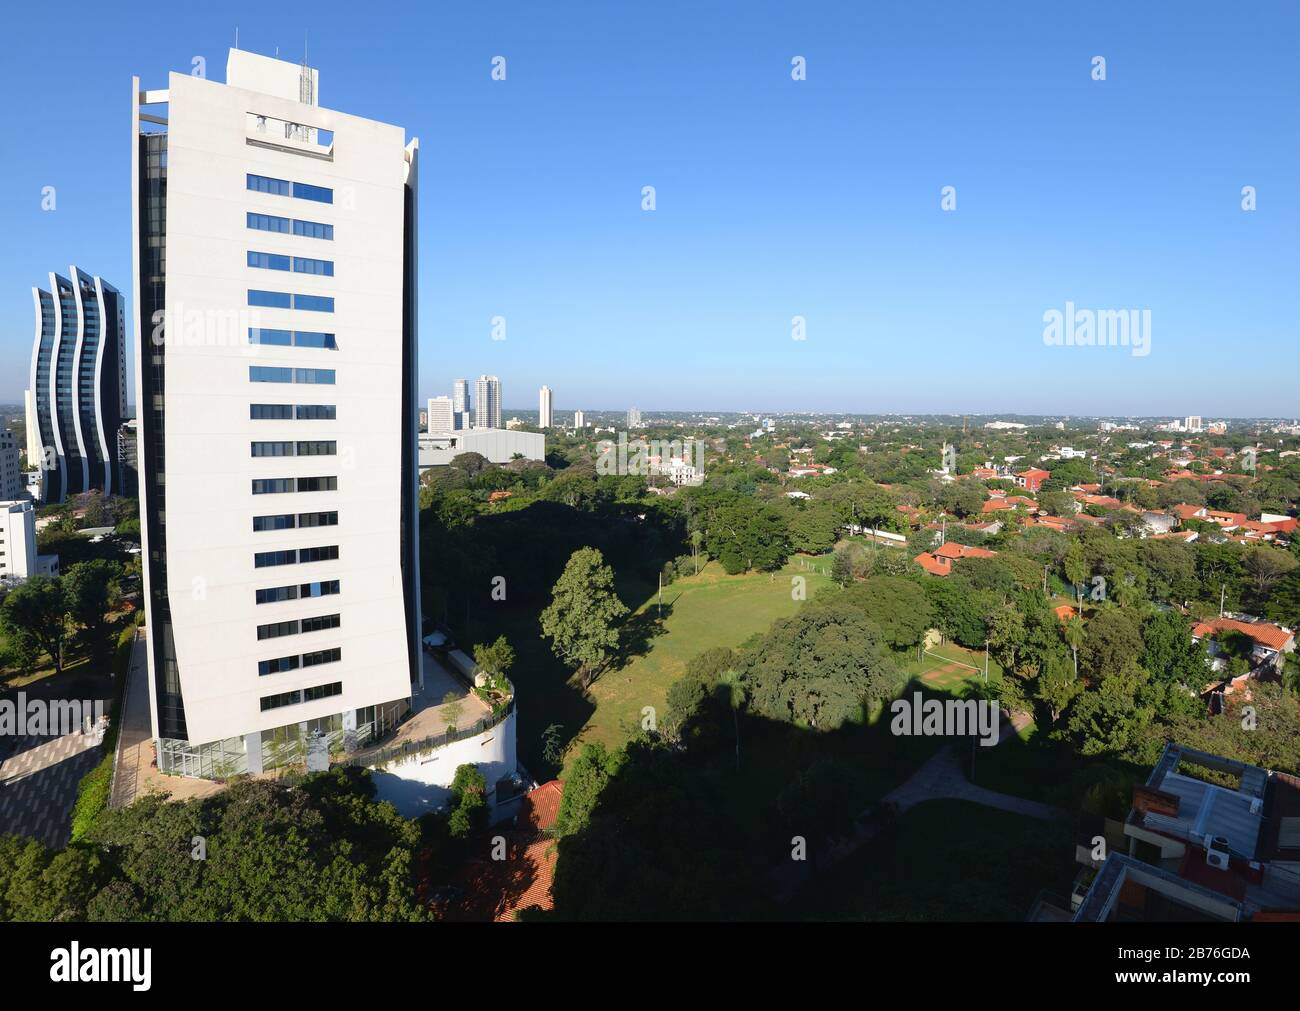 Hochansicht von Asuncion, Paraguay in Südamerika. Moderner Teil der Stadt mit hohen Wirtschaftsgebäuden und viel Vegetation. Stockfoto